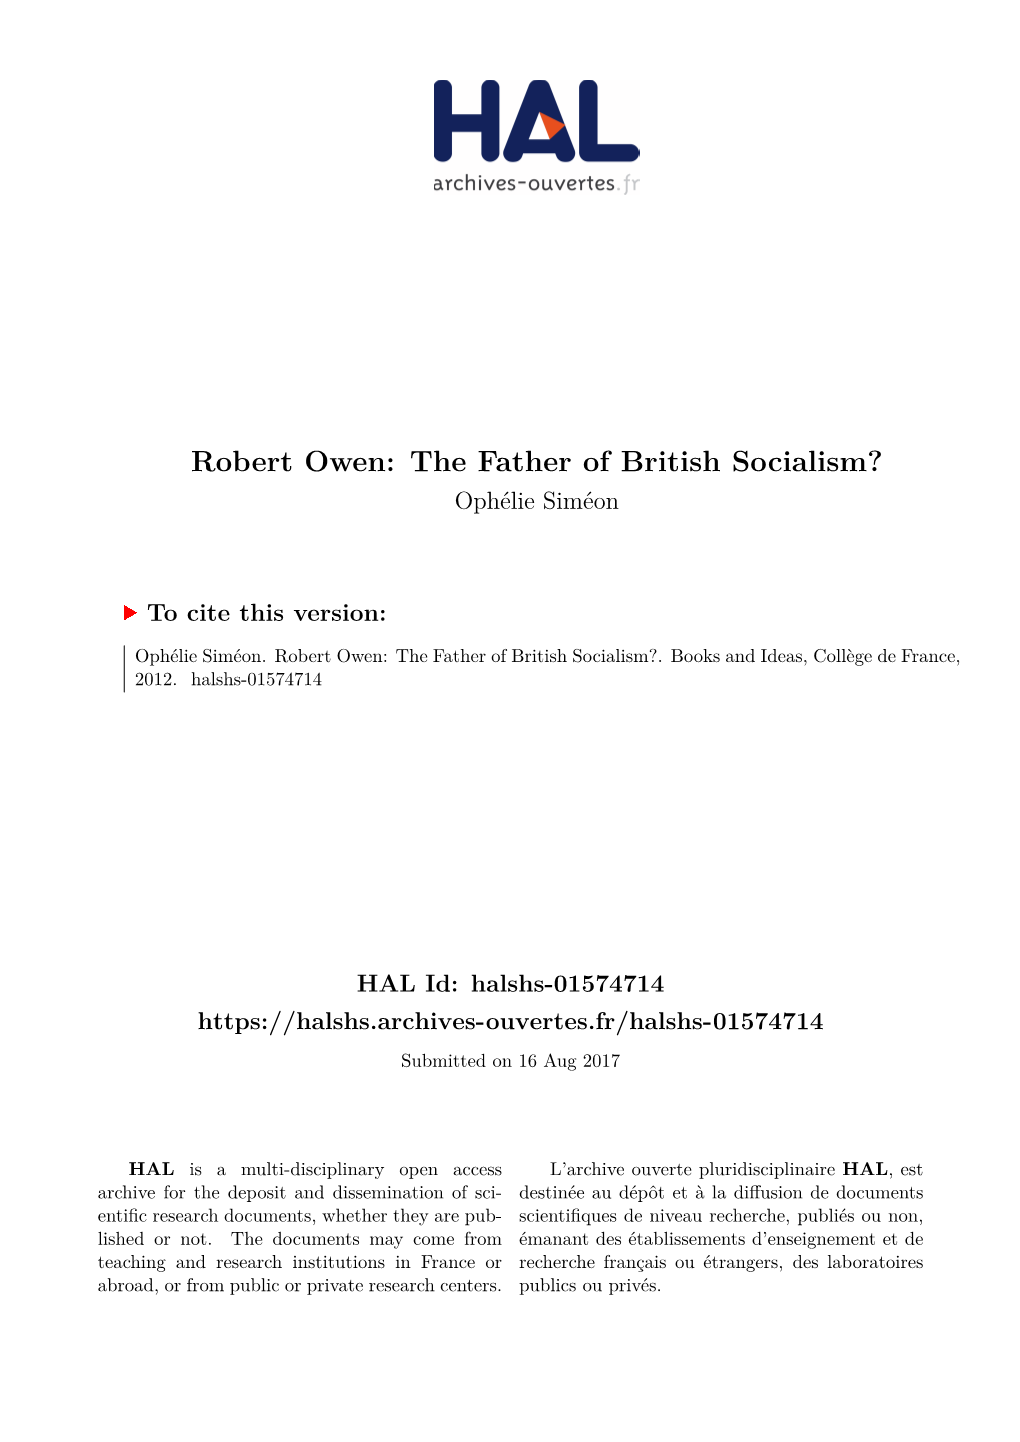 Robert Owen: the Father of British Socialism? Ophélie Siméon